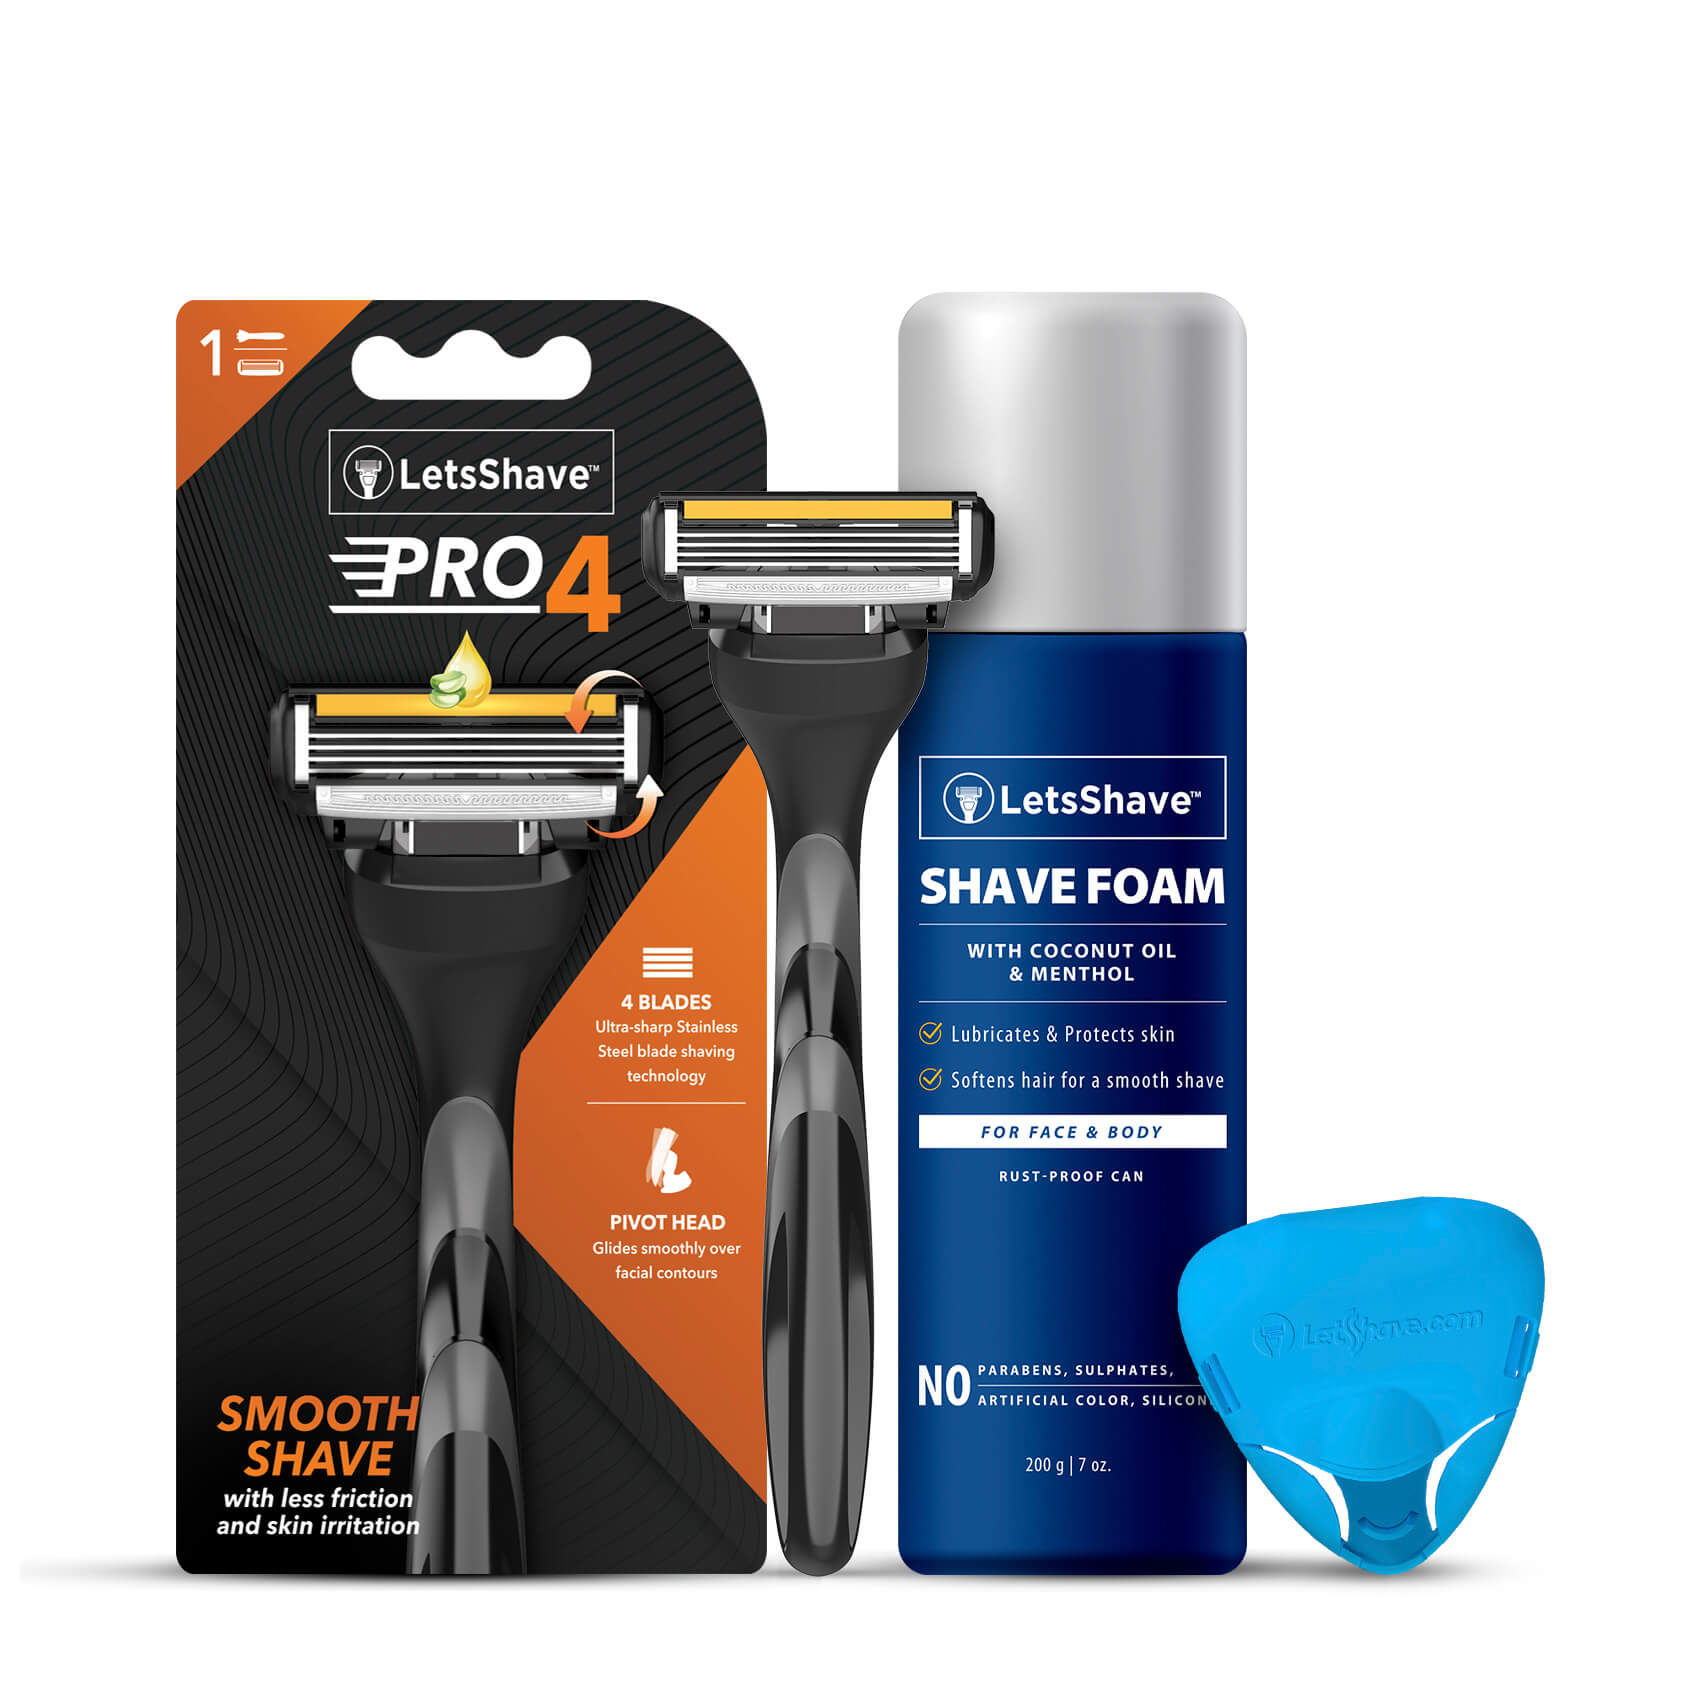 LetsShave Pro 4 Trial Shaving Kit (Green) with 1 Razor + Shaving foam + Razor Cap